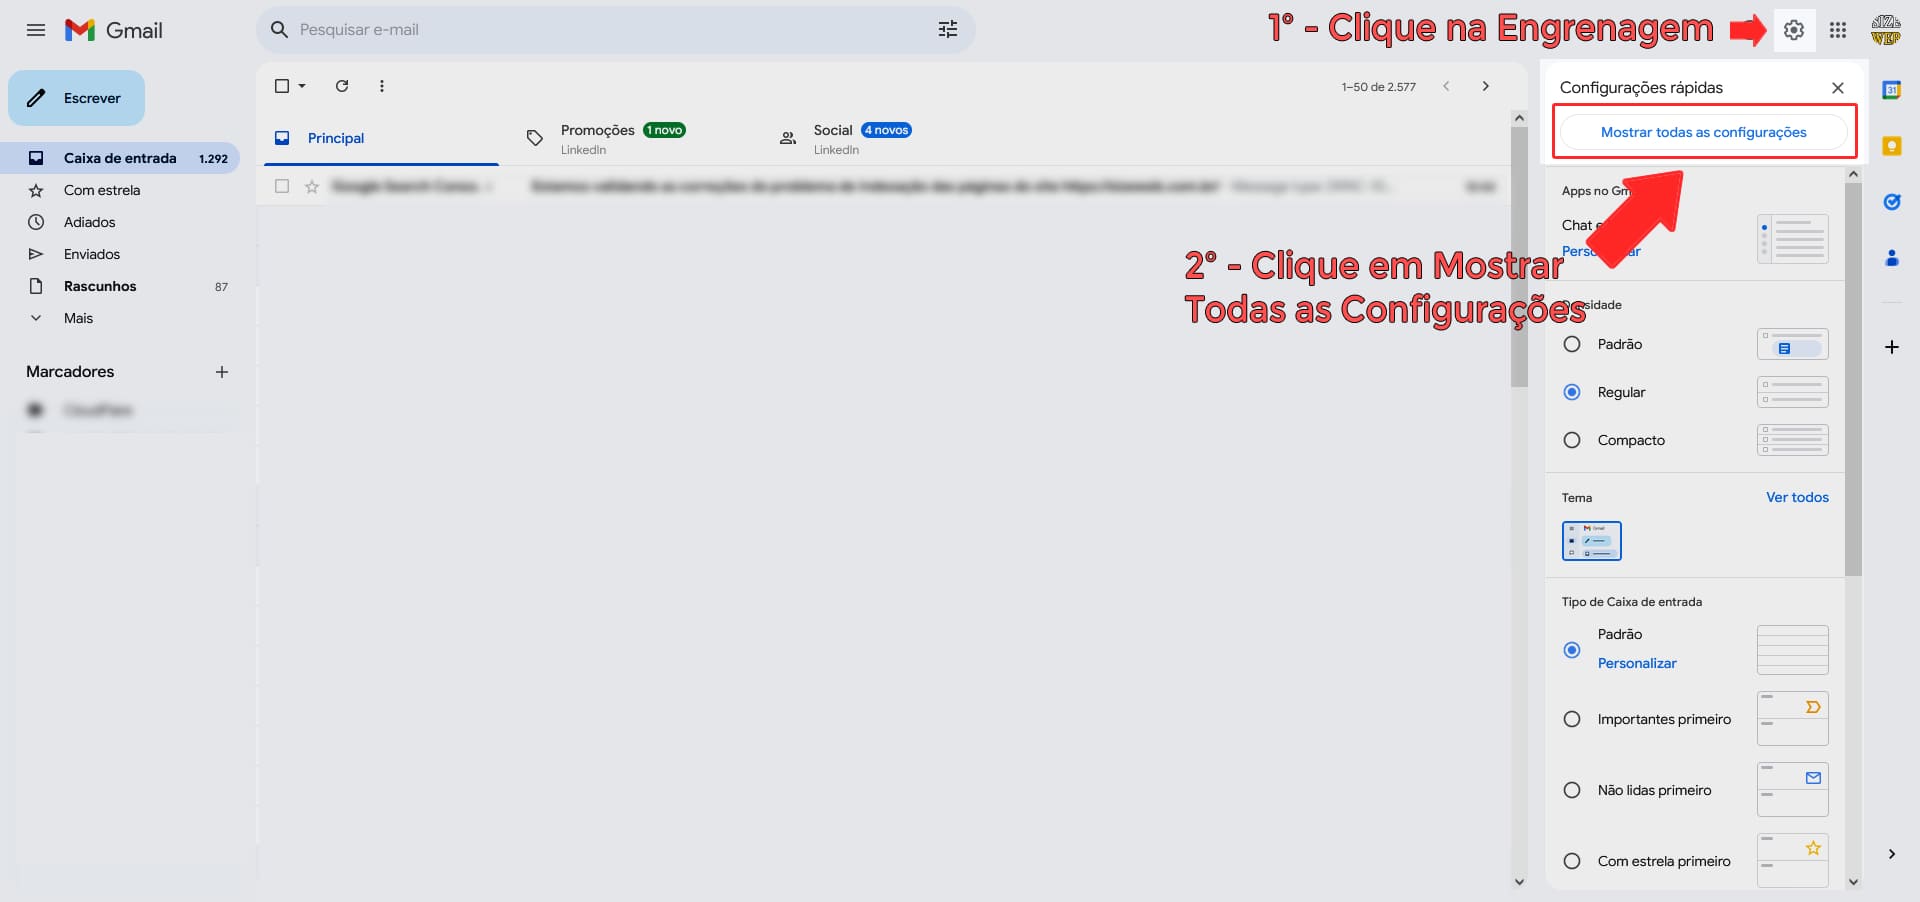 Imagem mostrando a tela de configuração do gmail.